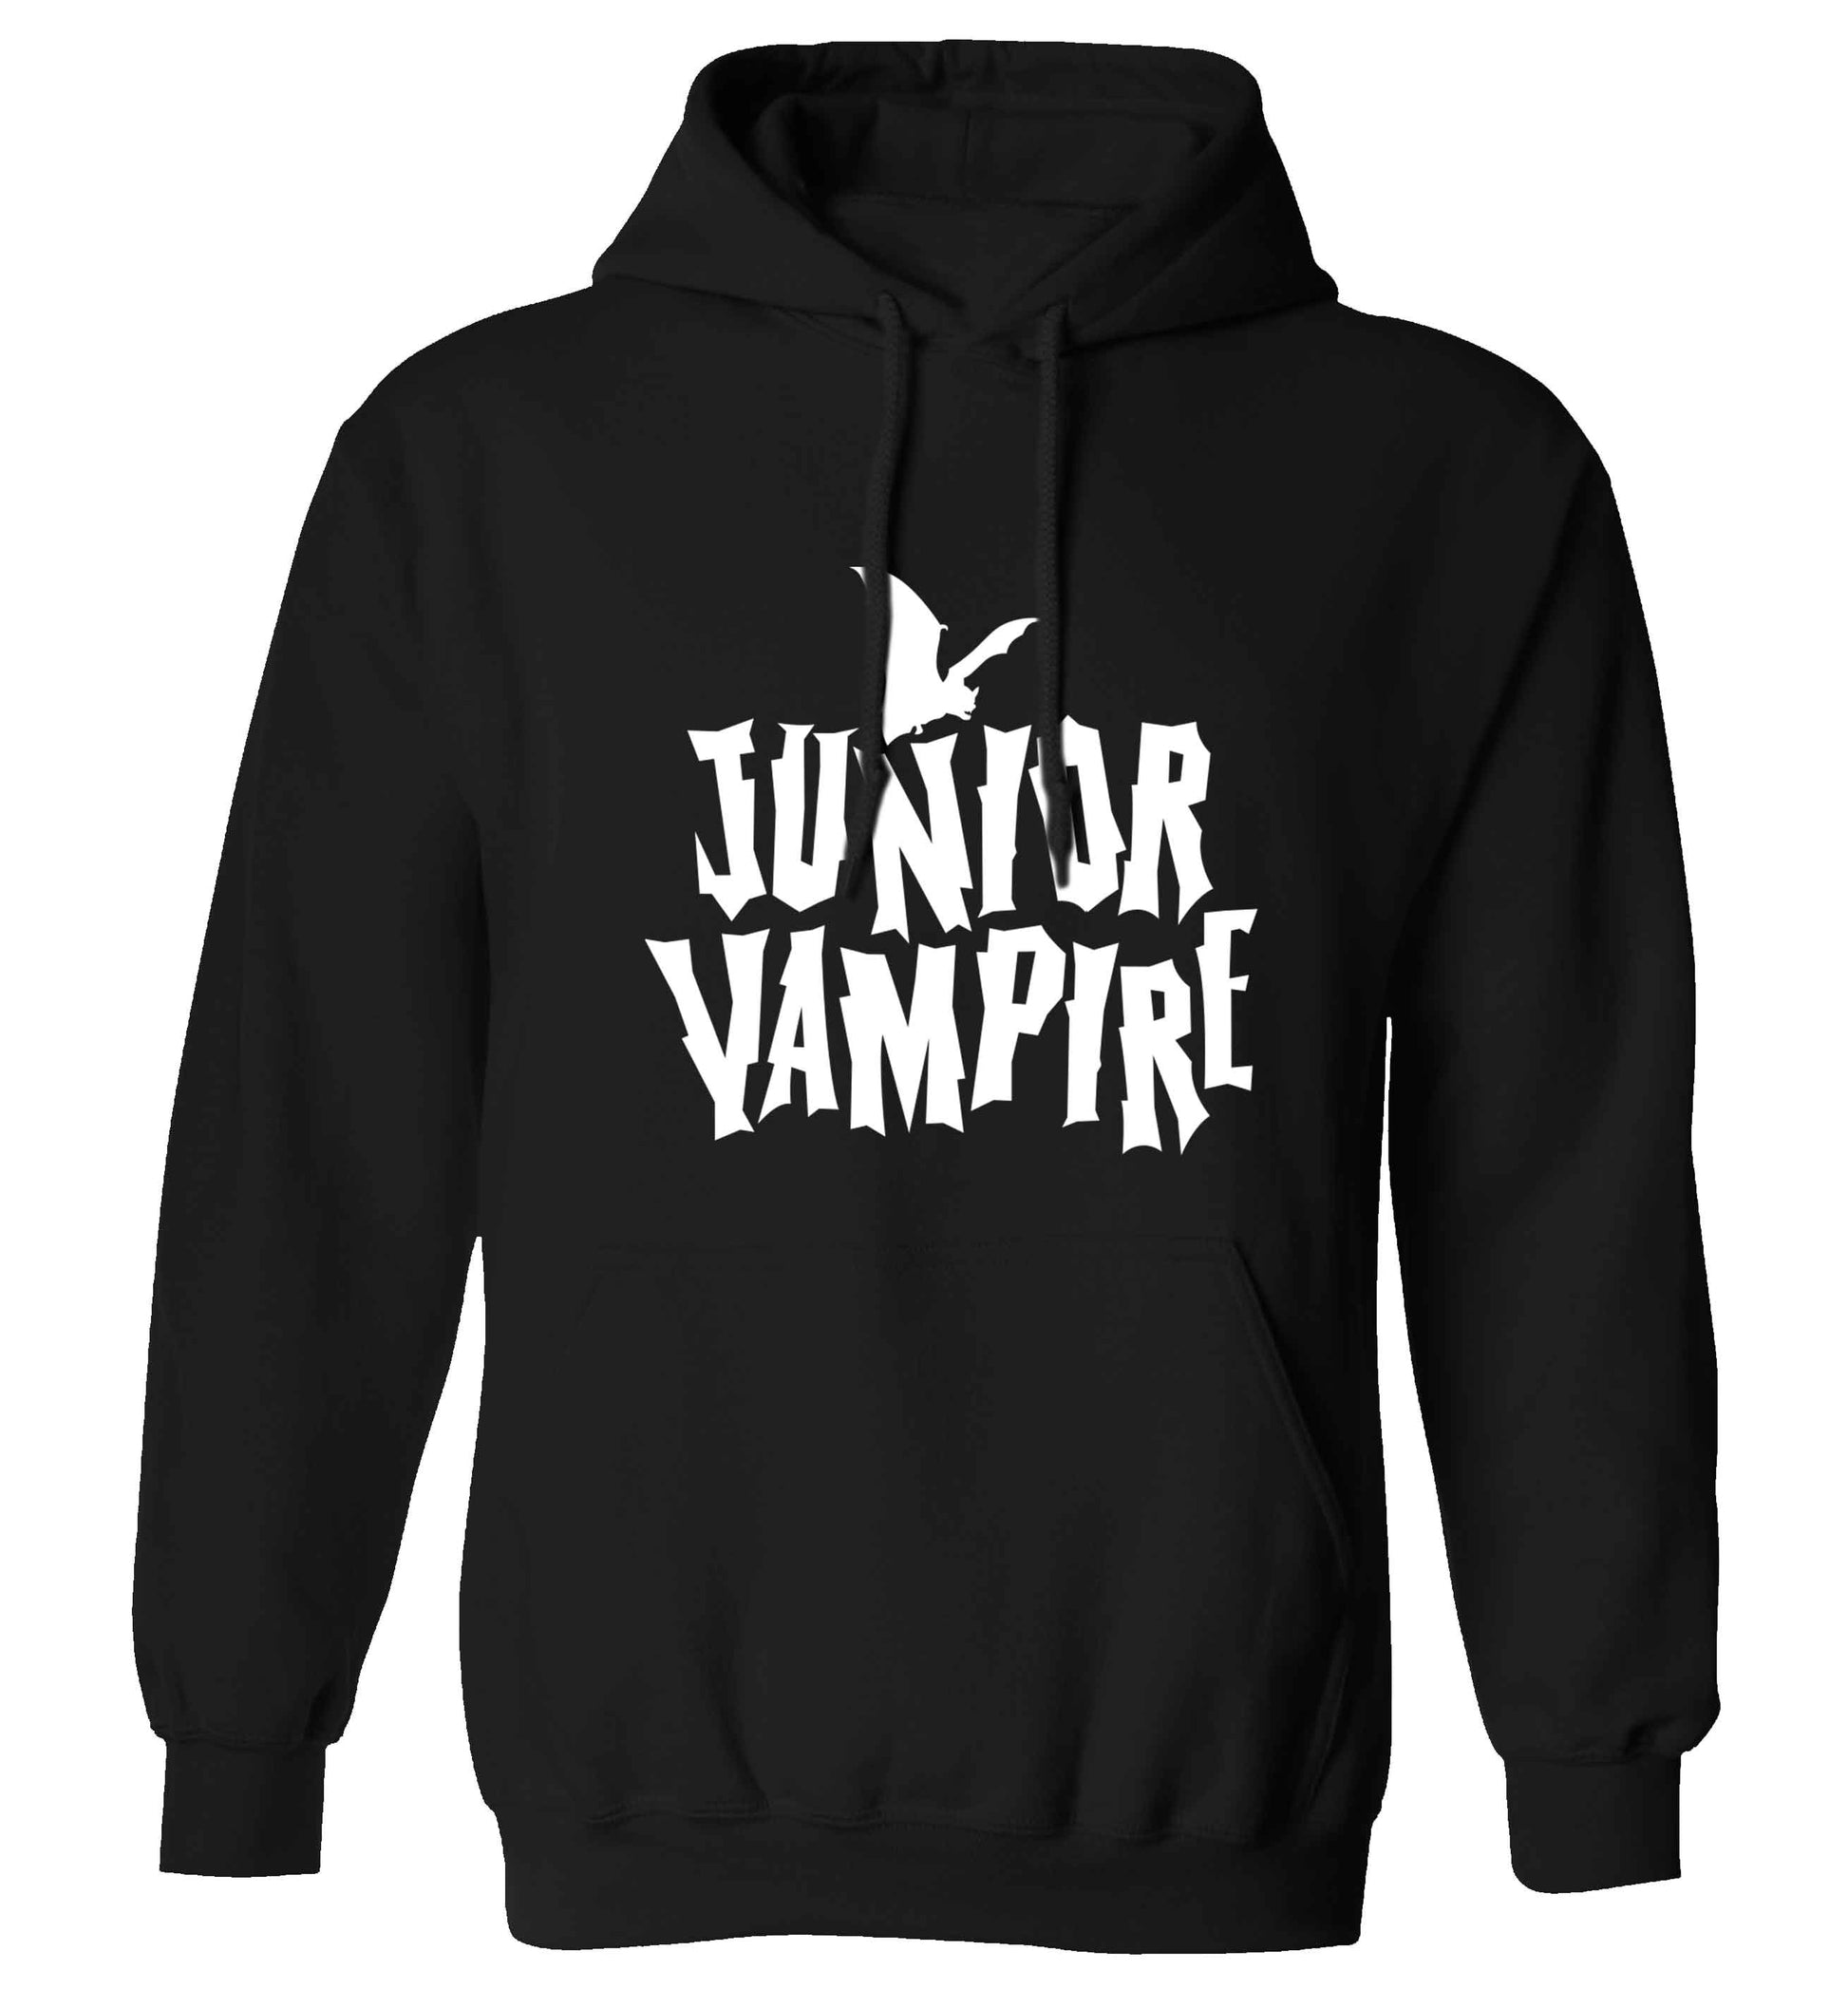 Junior vampire adults unisex black hoodie 2XL